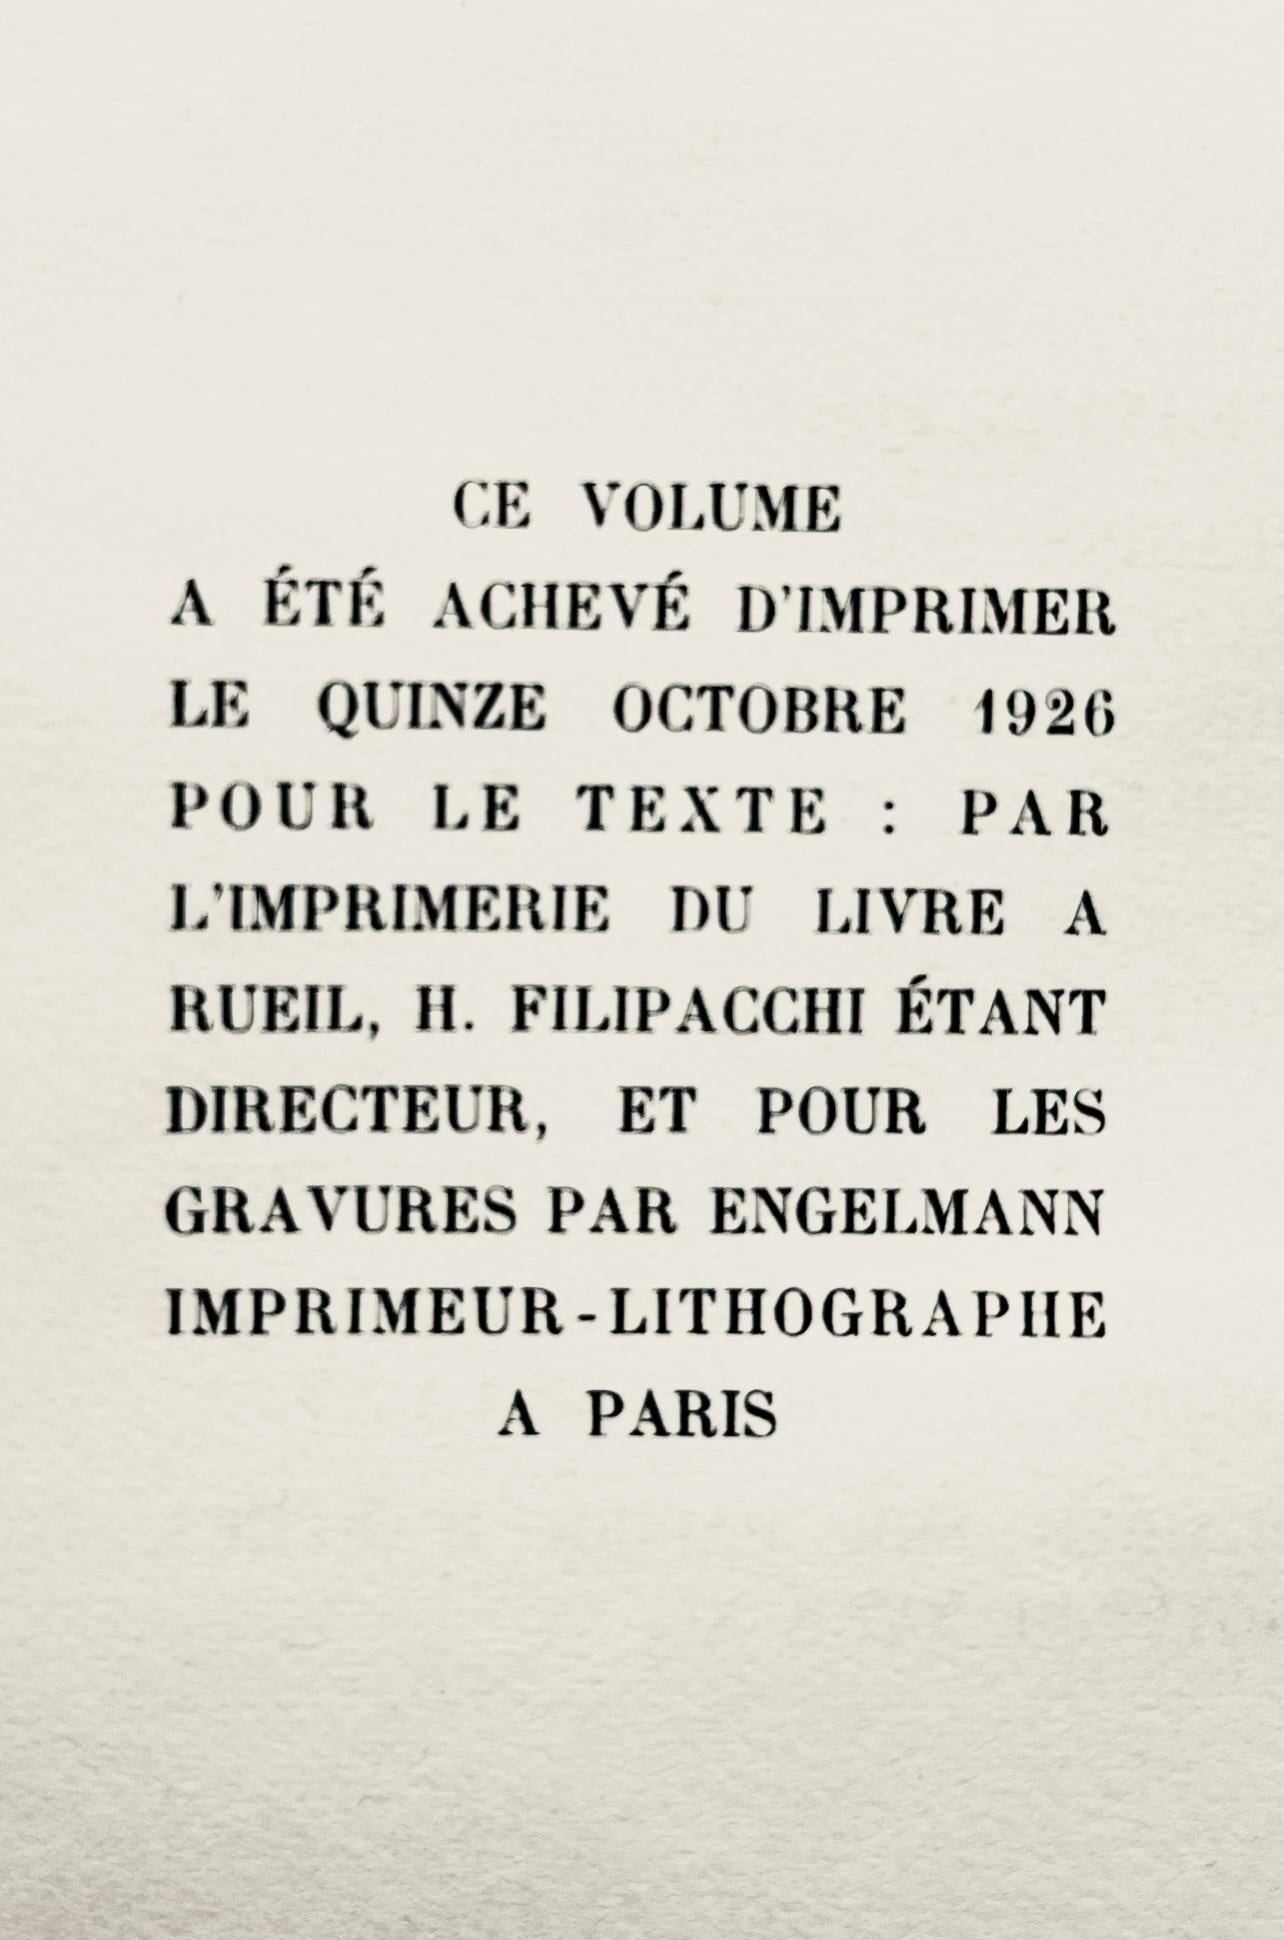 Delaunay, La flèche de Notre-Dame (Habasque 720-728), Allo! Paris! (after) For Sale 3